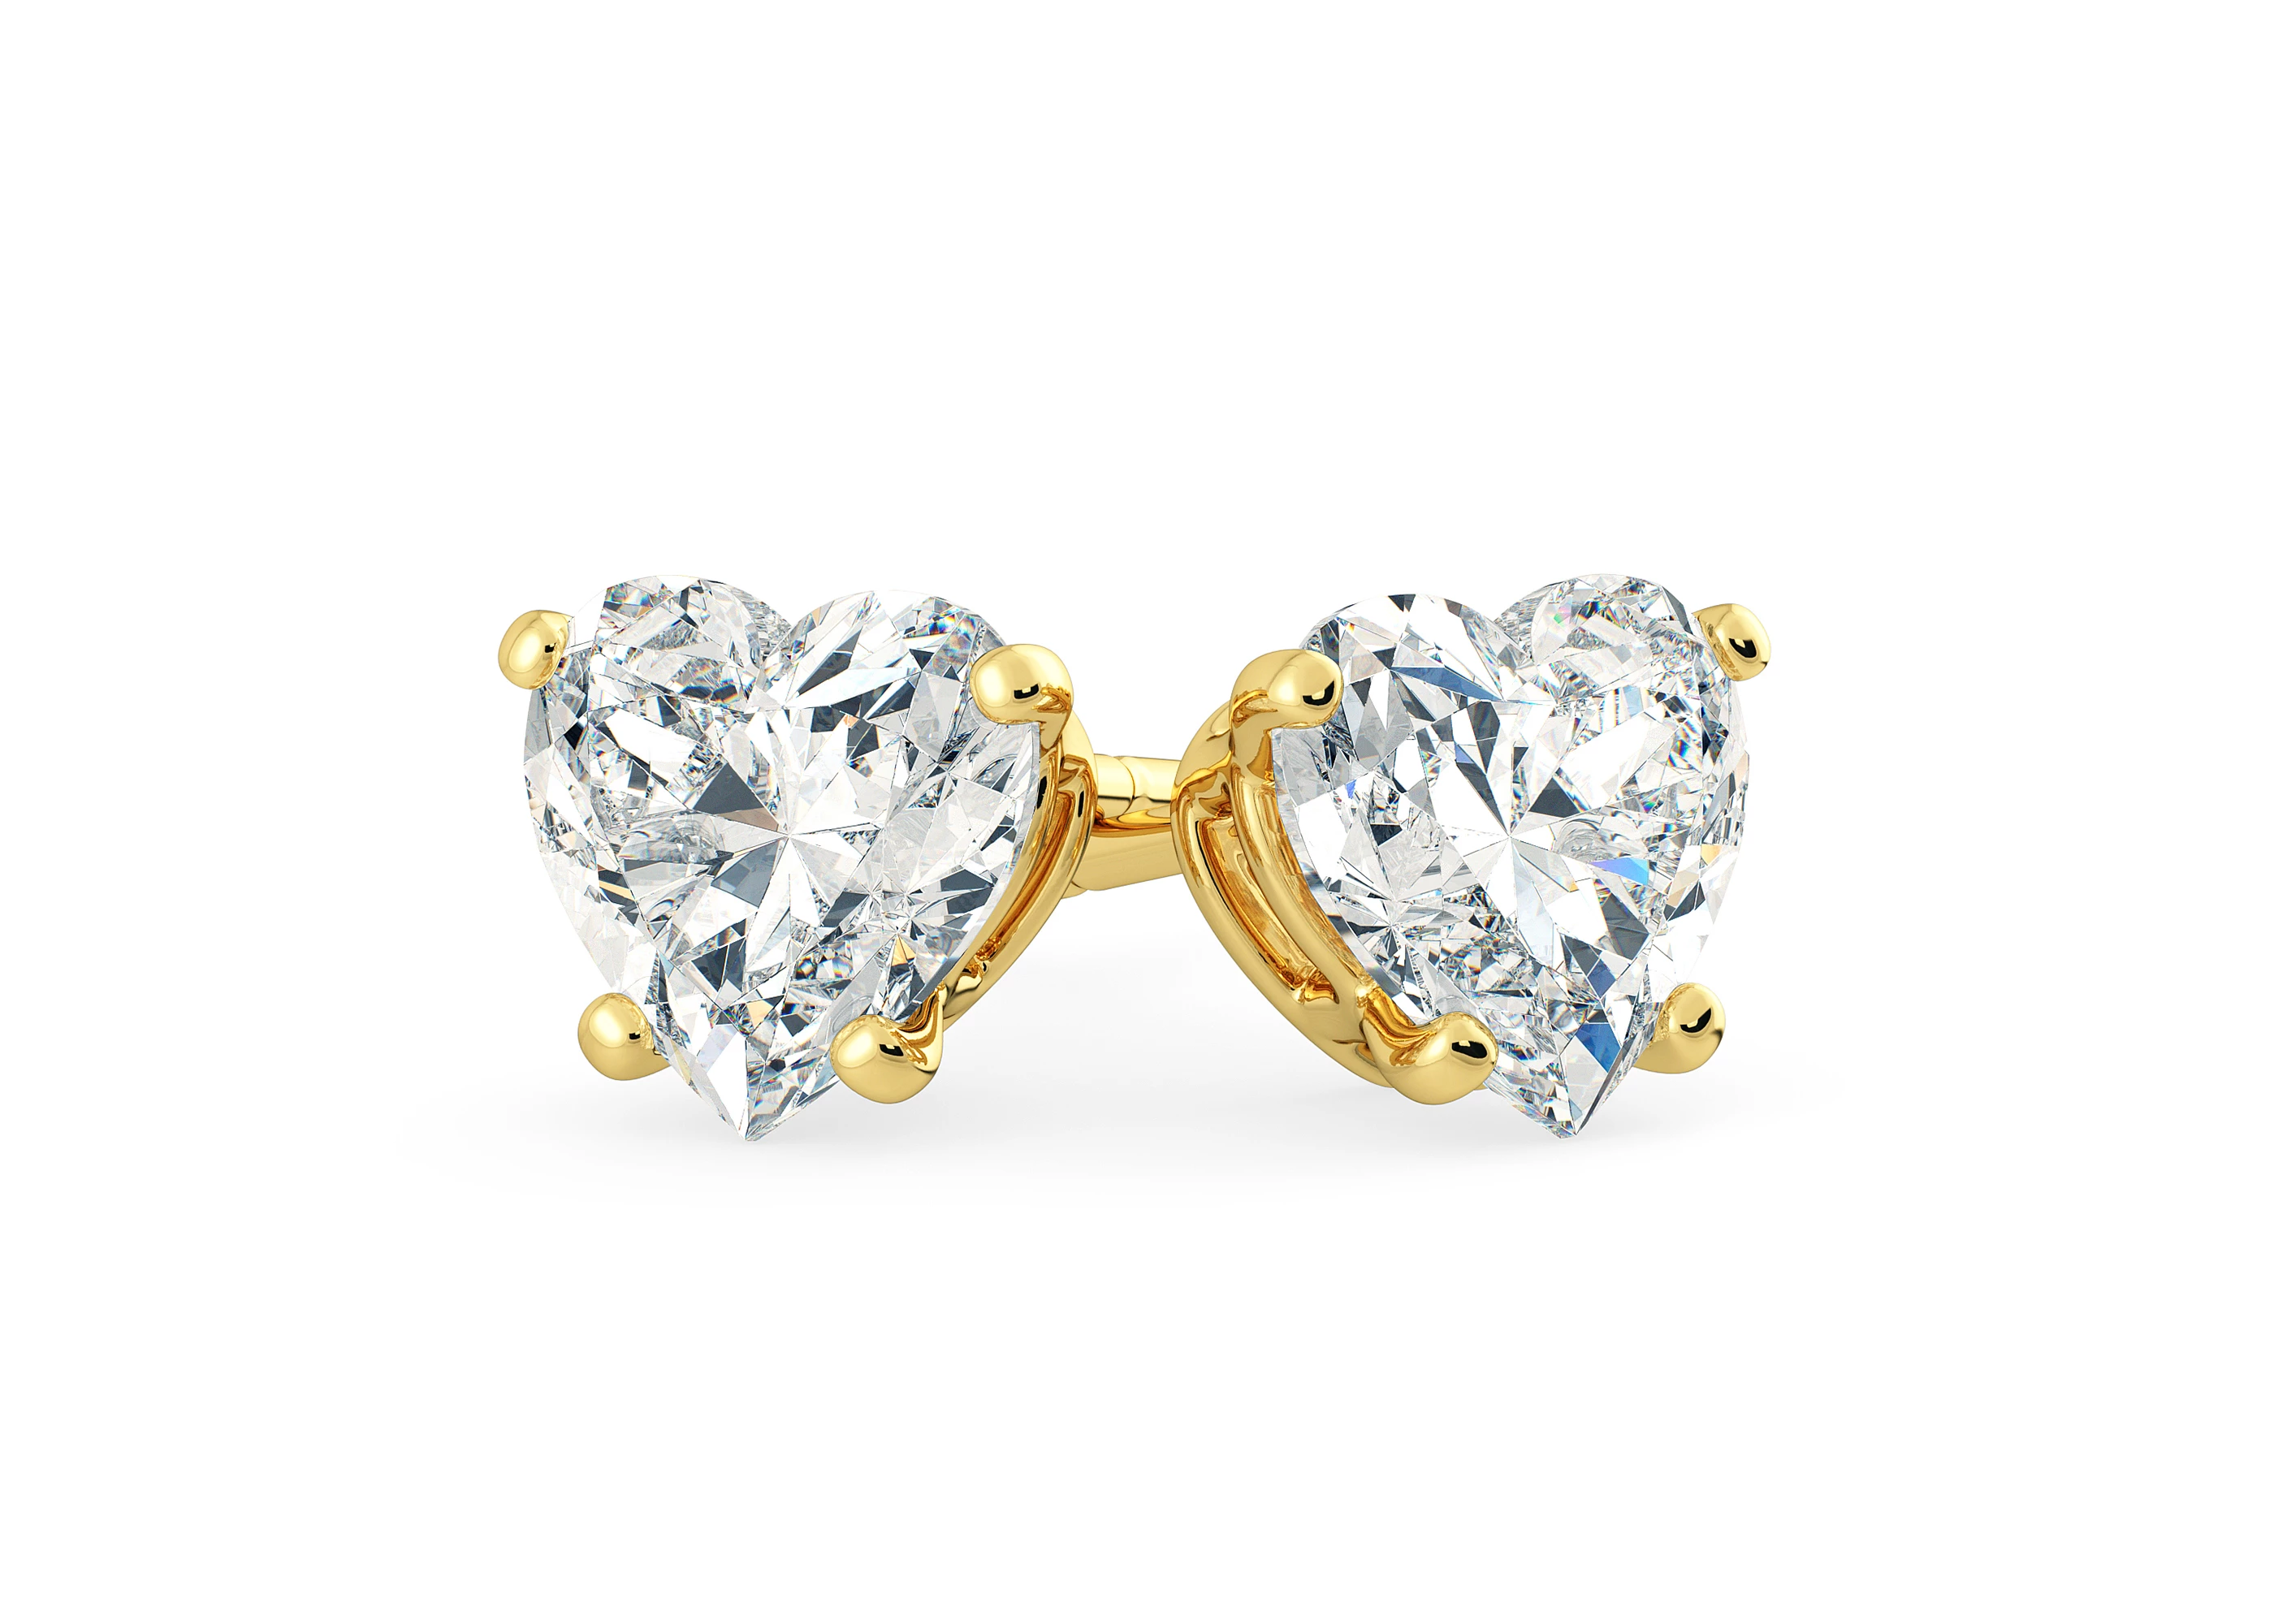 Ettore Heart Diamond Stud Earrings in 18K Yellow Gold with Screw Backs